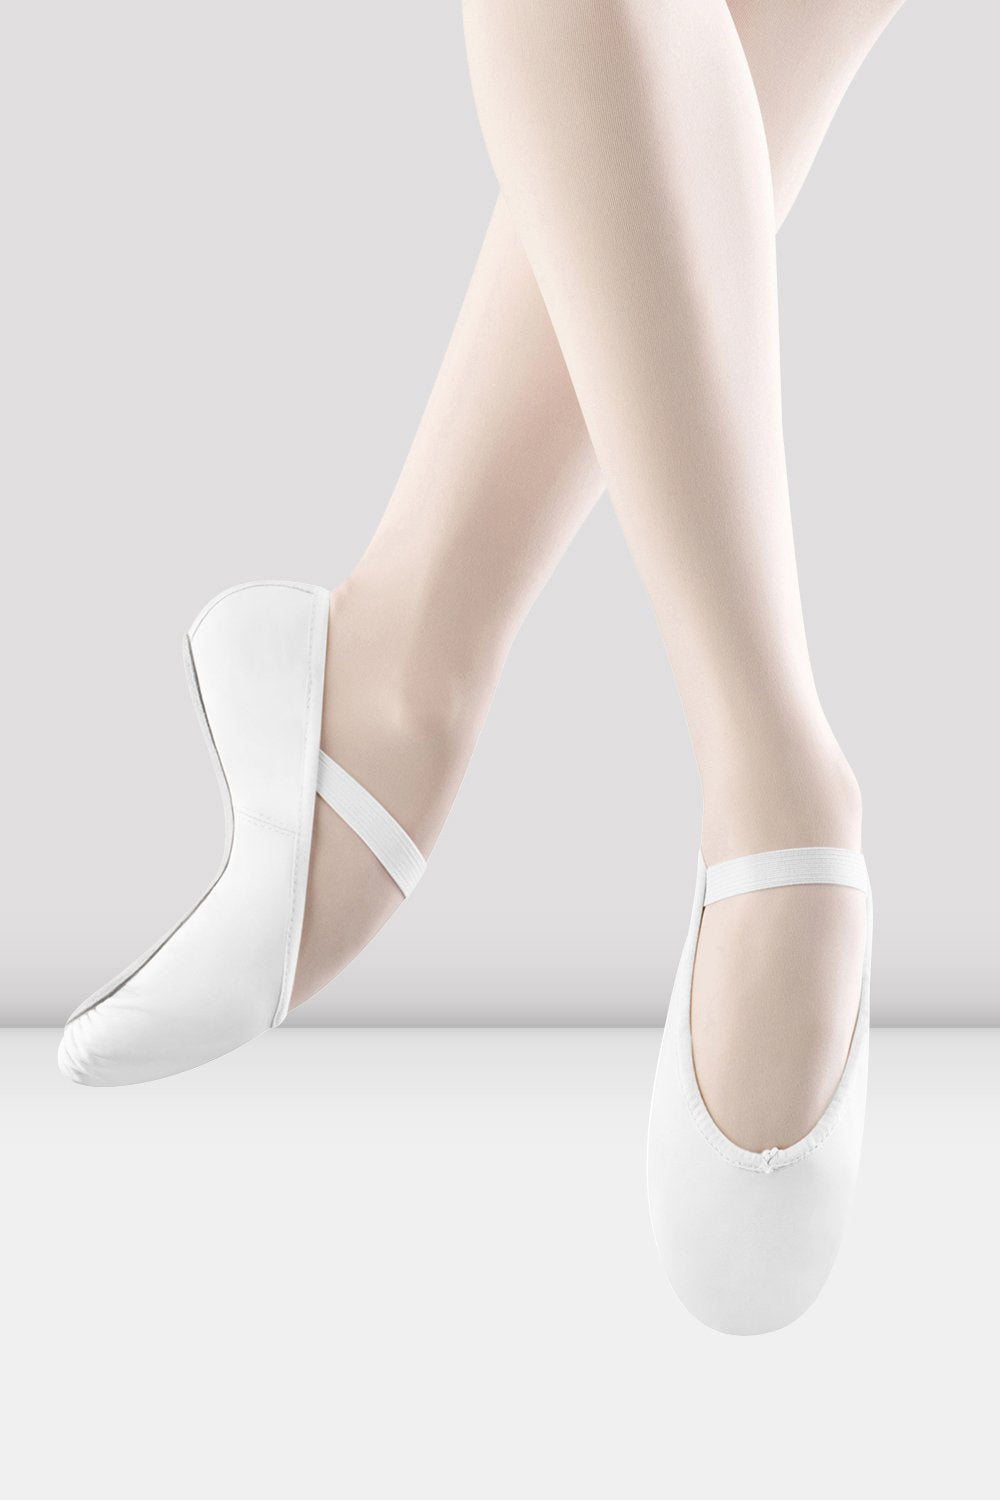 Zapatillas de ballet de cuero Arise para mujer, blancas | BLOCH UE – BLOCH EU